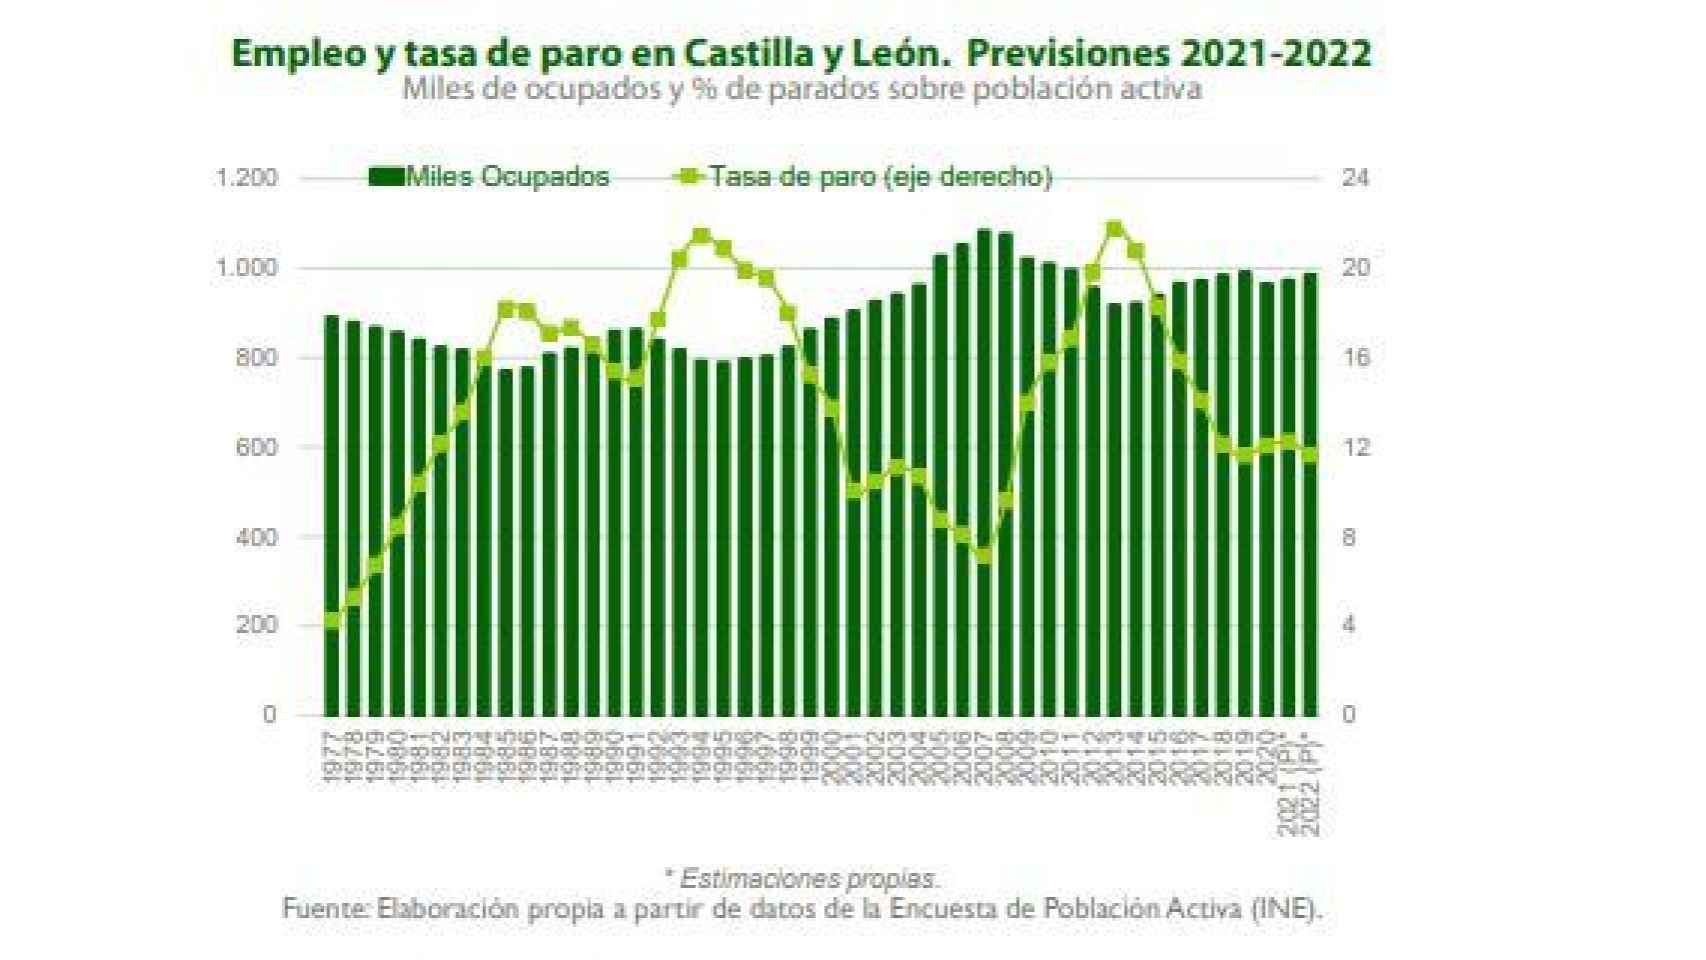 Previsiones de empleo y tasa de paro para 2022 en Castilla y León según el informe de Unicaja Banco